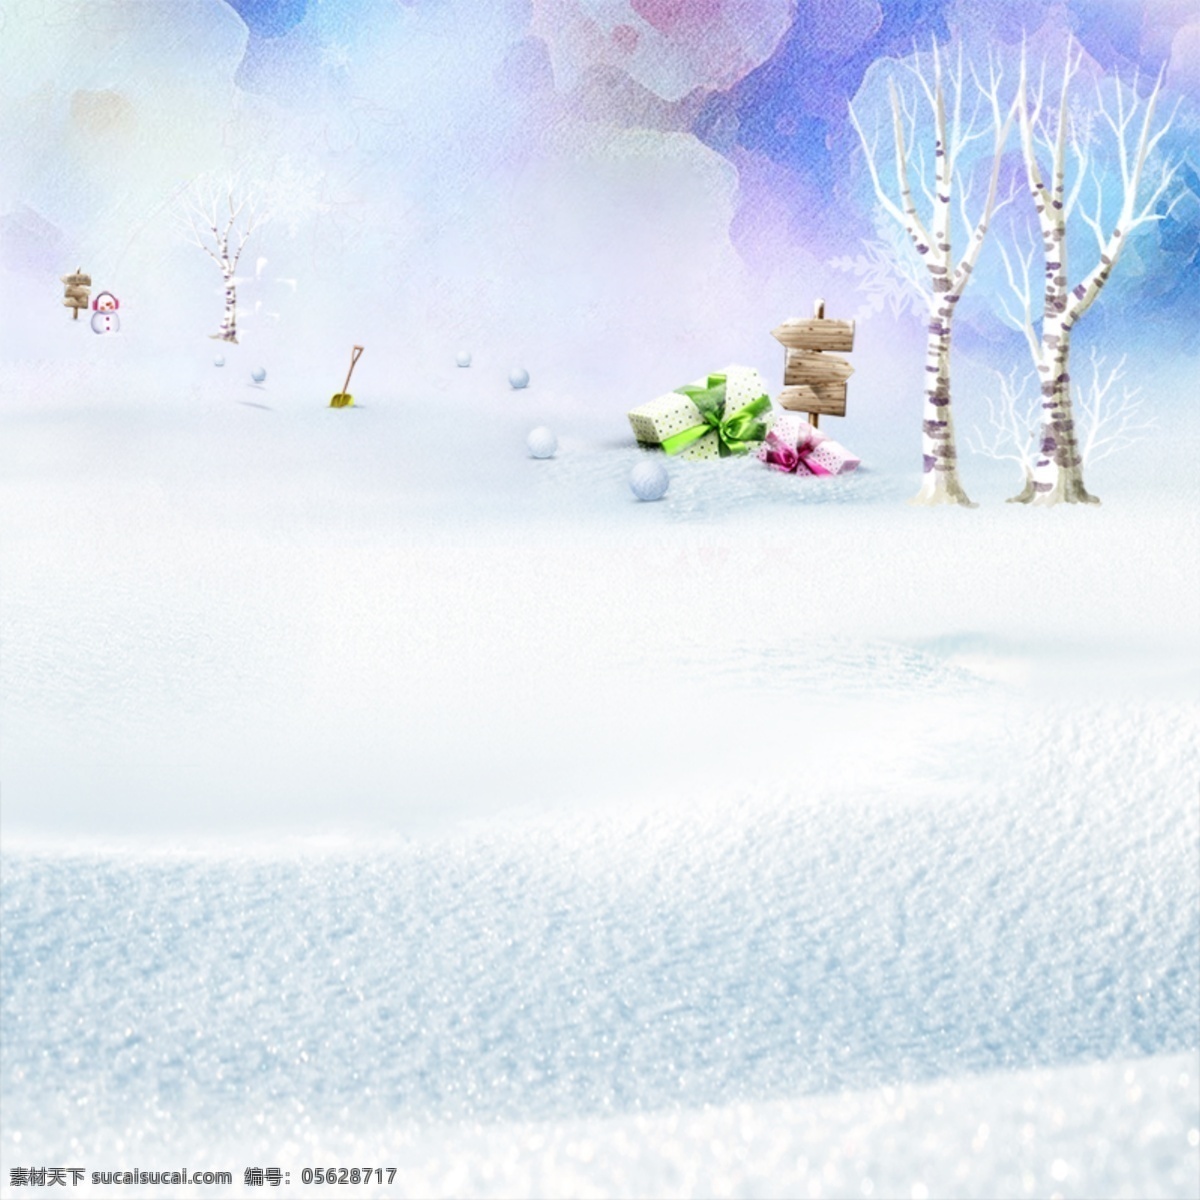 冬季插画背景 冬季背景 冬季插画 冬天 广告设计模板 源文件 冬季 氛围 模板下载 冬季氛围 写意背景 白色